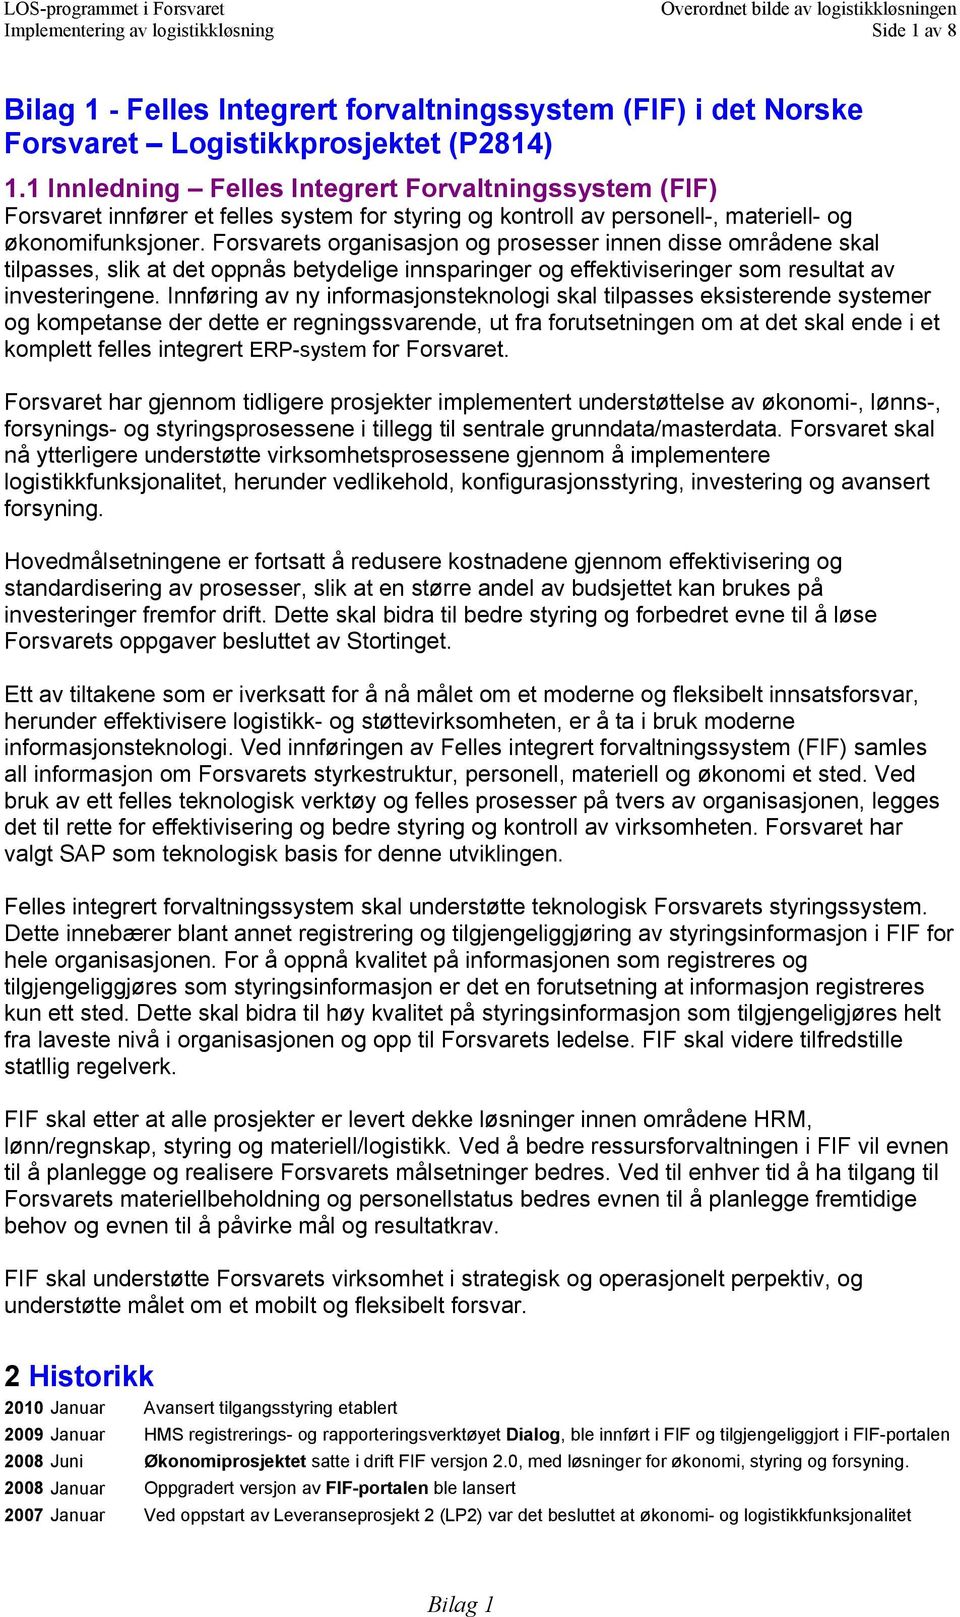 Bilag 1 - Felles Integrert forvaltningssystem (FIF) i det Norske Forsvaret  Logistikkprosjektet (P2814) - PDF Gratis nedlasting